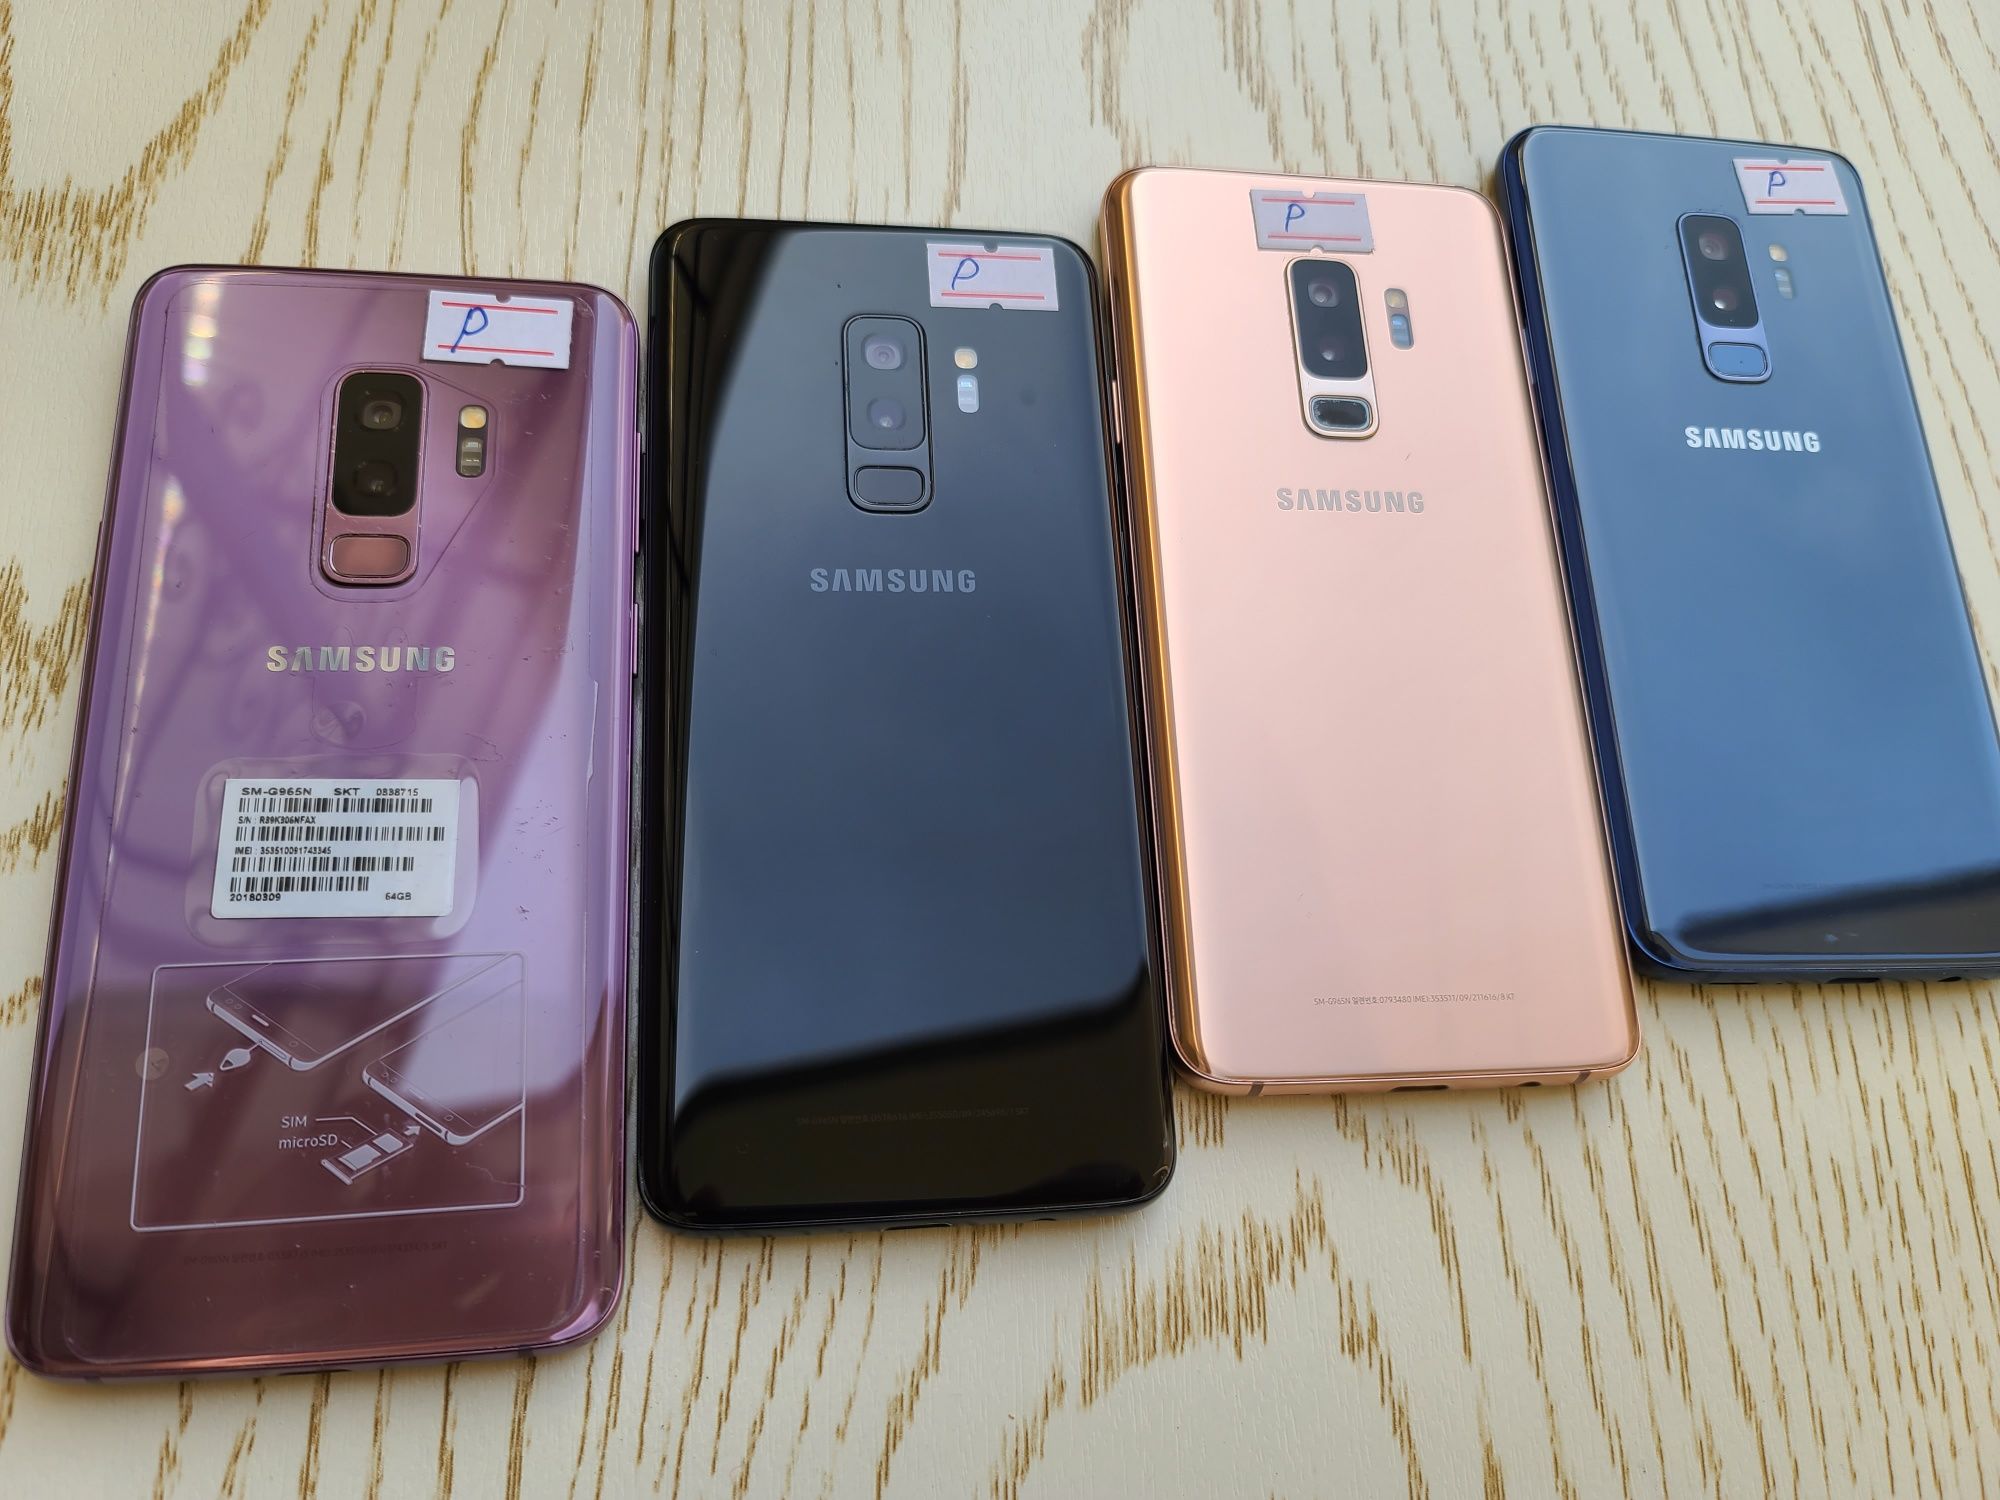 Samsung Galaxy S9 PLUS DUOS. OzU 6/64 GB. Garantya bor. IME tayyor